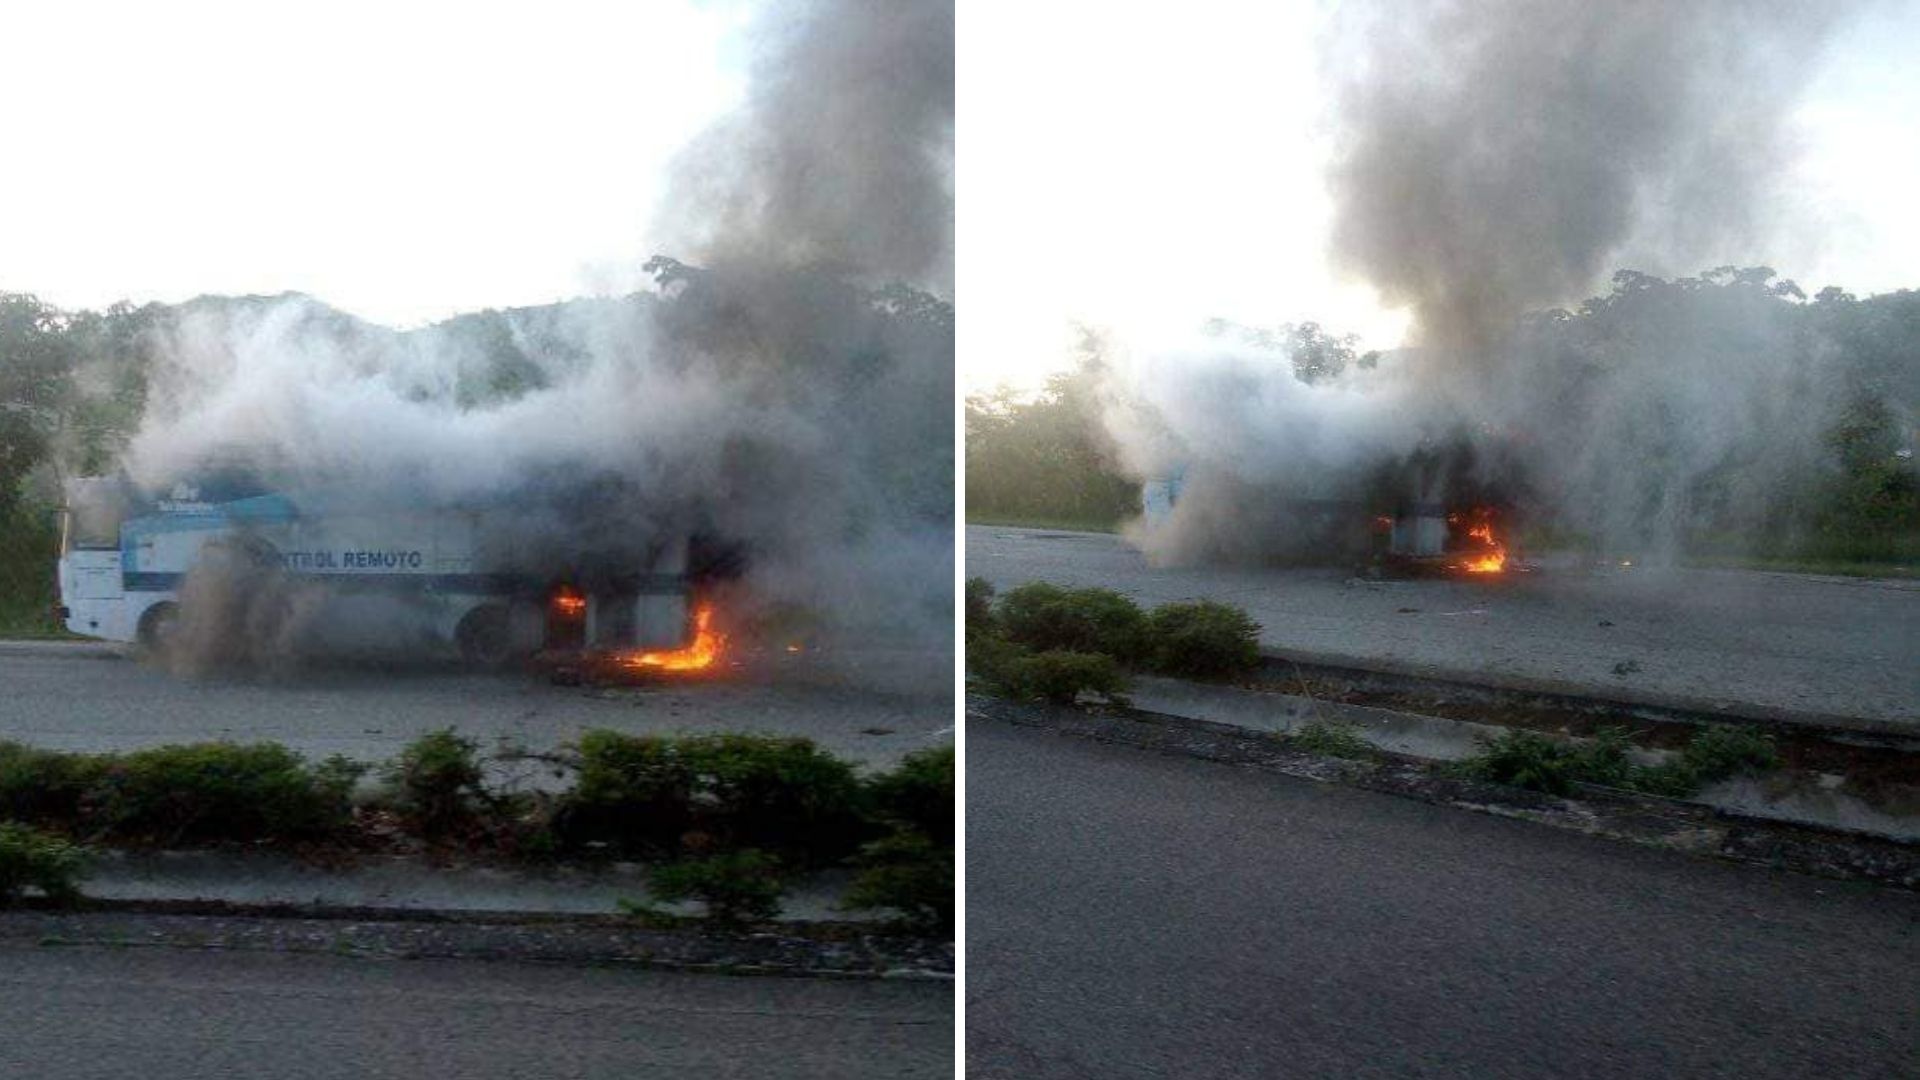 Según confirmó el periodista Orlando Amaro Álvarez en Facebook, el autobús se incendió este miércoles en el tramo Boniato- El Cristo de la autopista en Santiago de Cuba